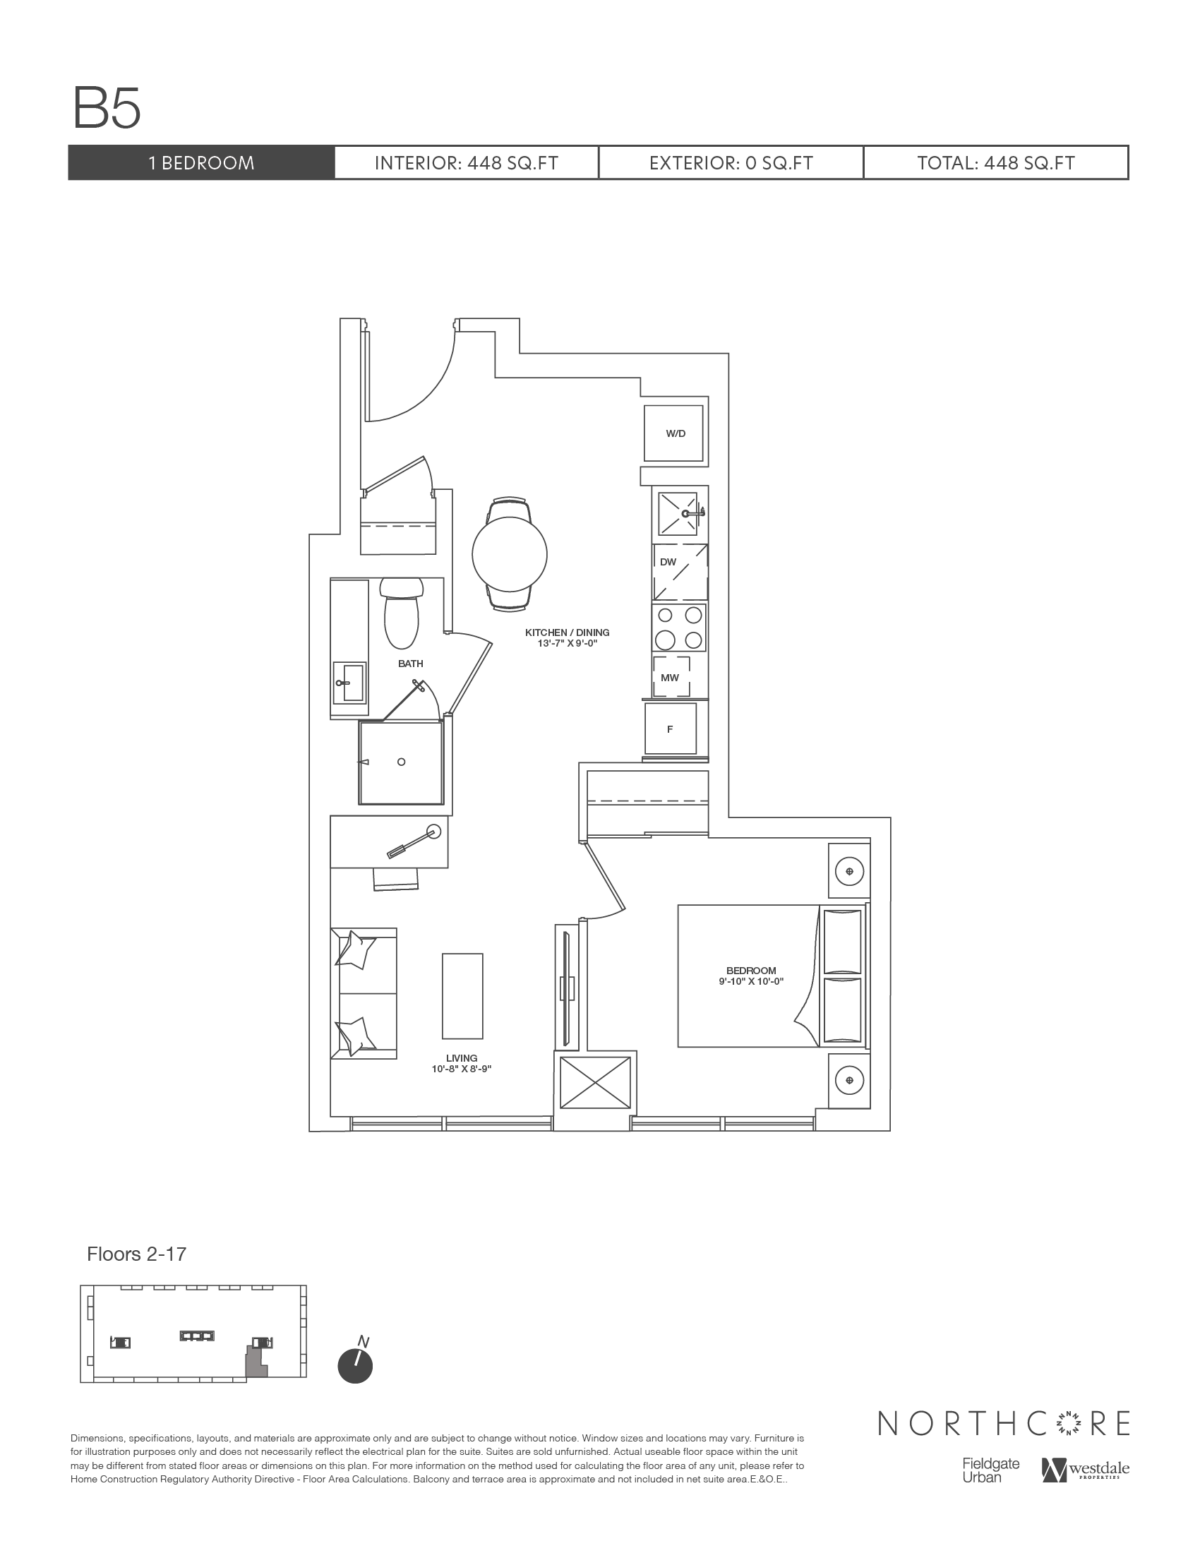 B5 floorplan